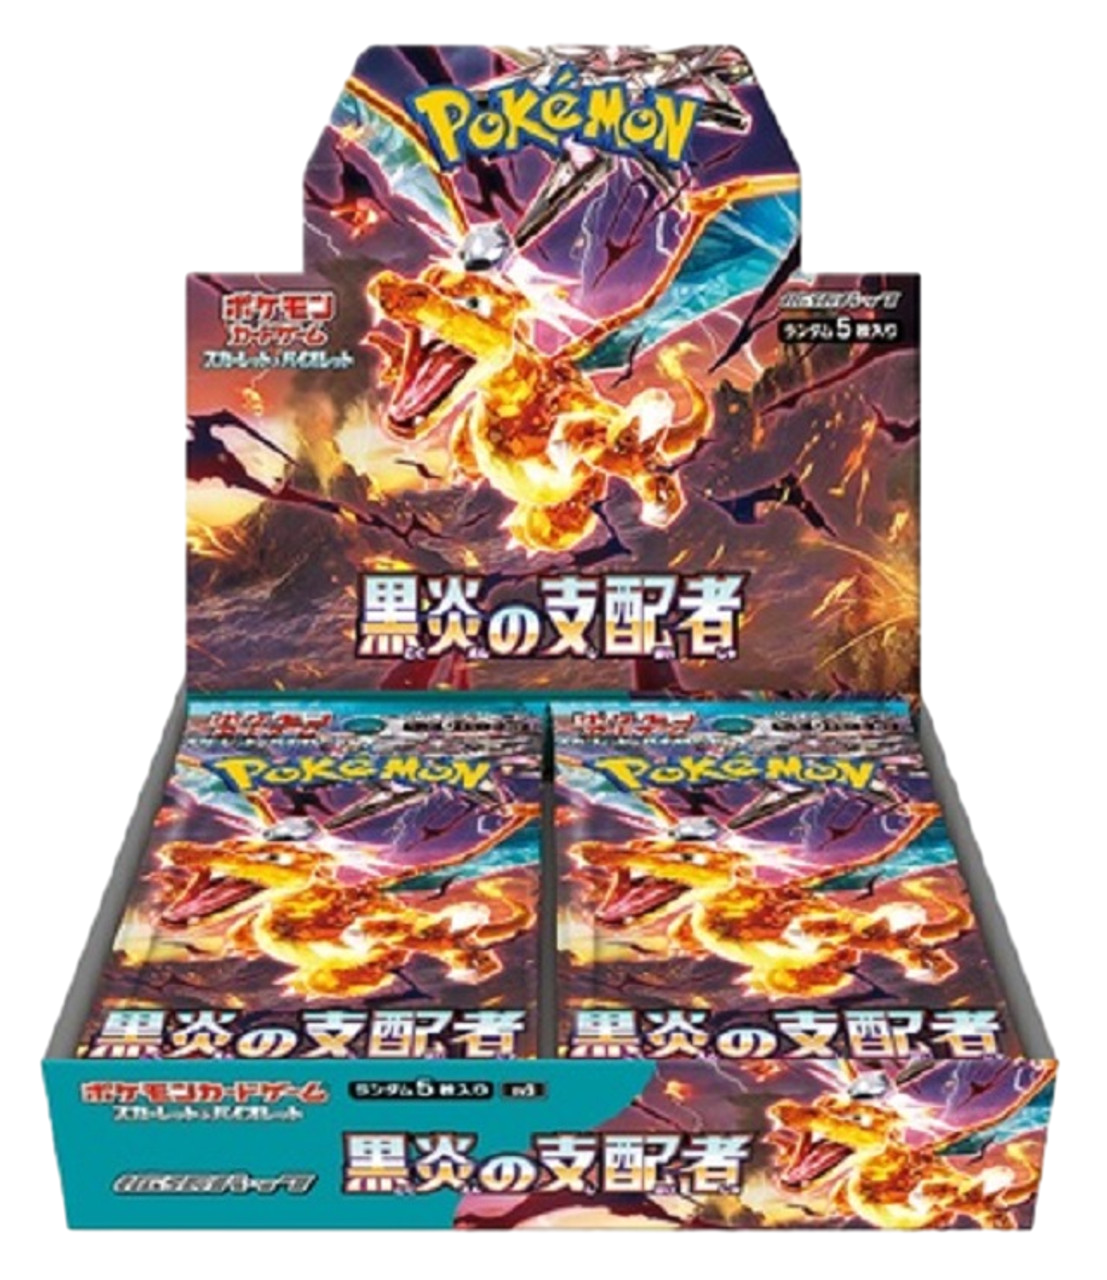 Japanese Pokémon - sv3 - Scarlet & Violet: Ruler of the Black Flame (Obsidian Flames) - Booster Boxes & Packs